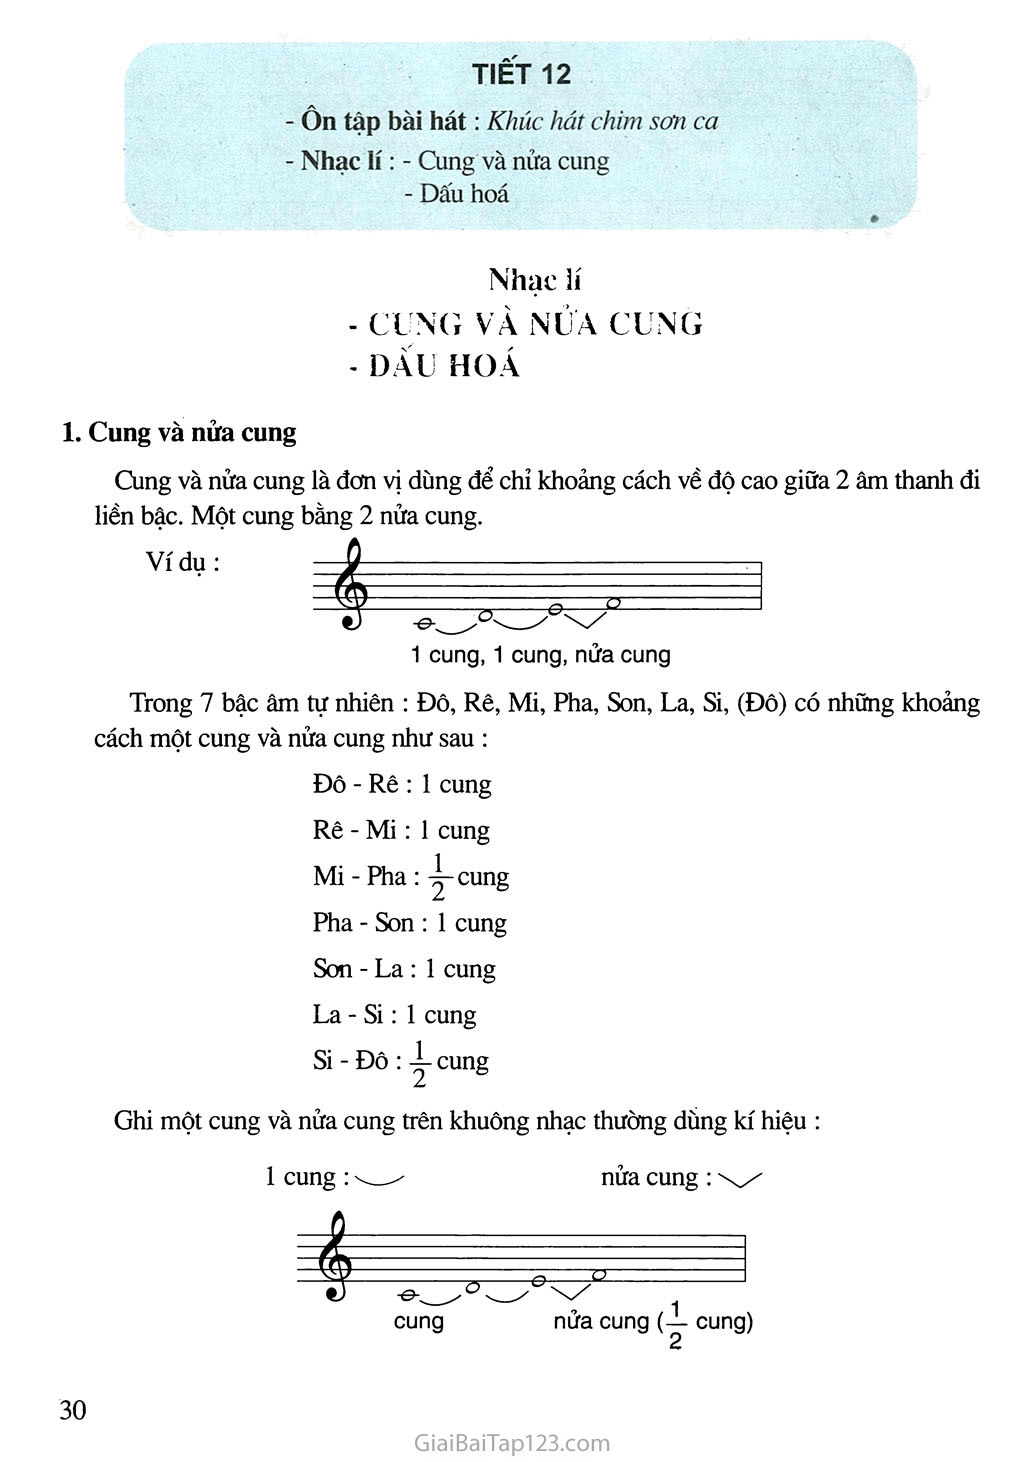 Tiết 12. Ôn tập bài hát: Khúc hát chim sơn ca - Nhạc lí: Cung và nửa cung - Dấu hóa trang 1